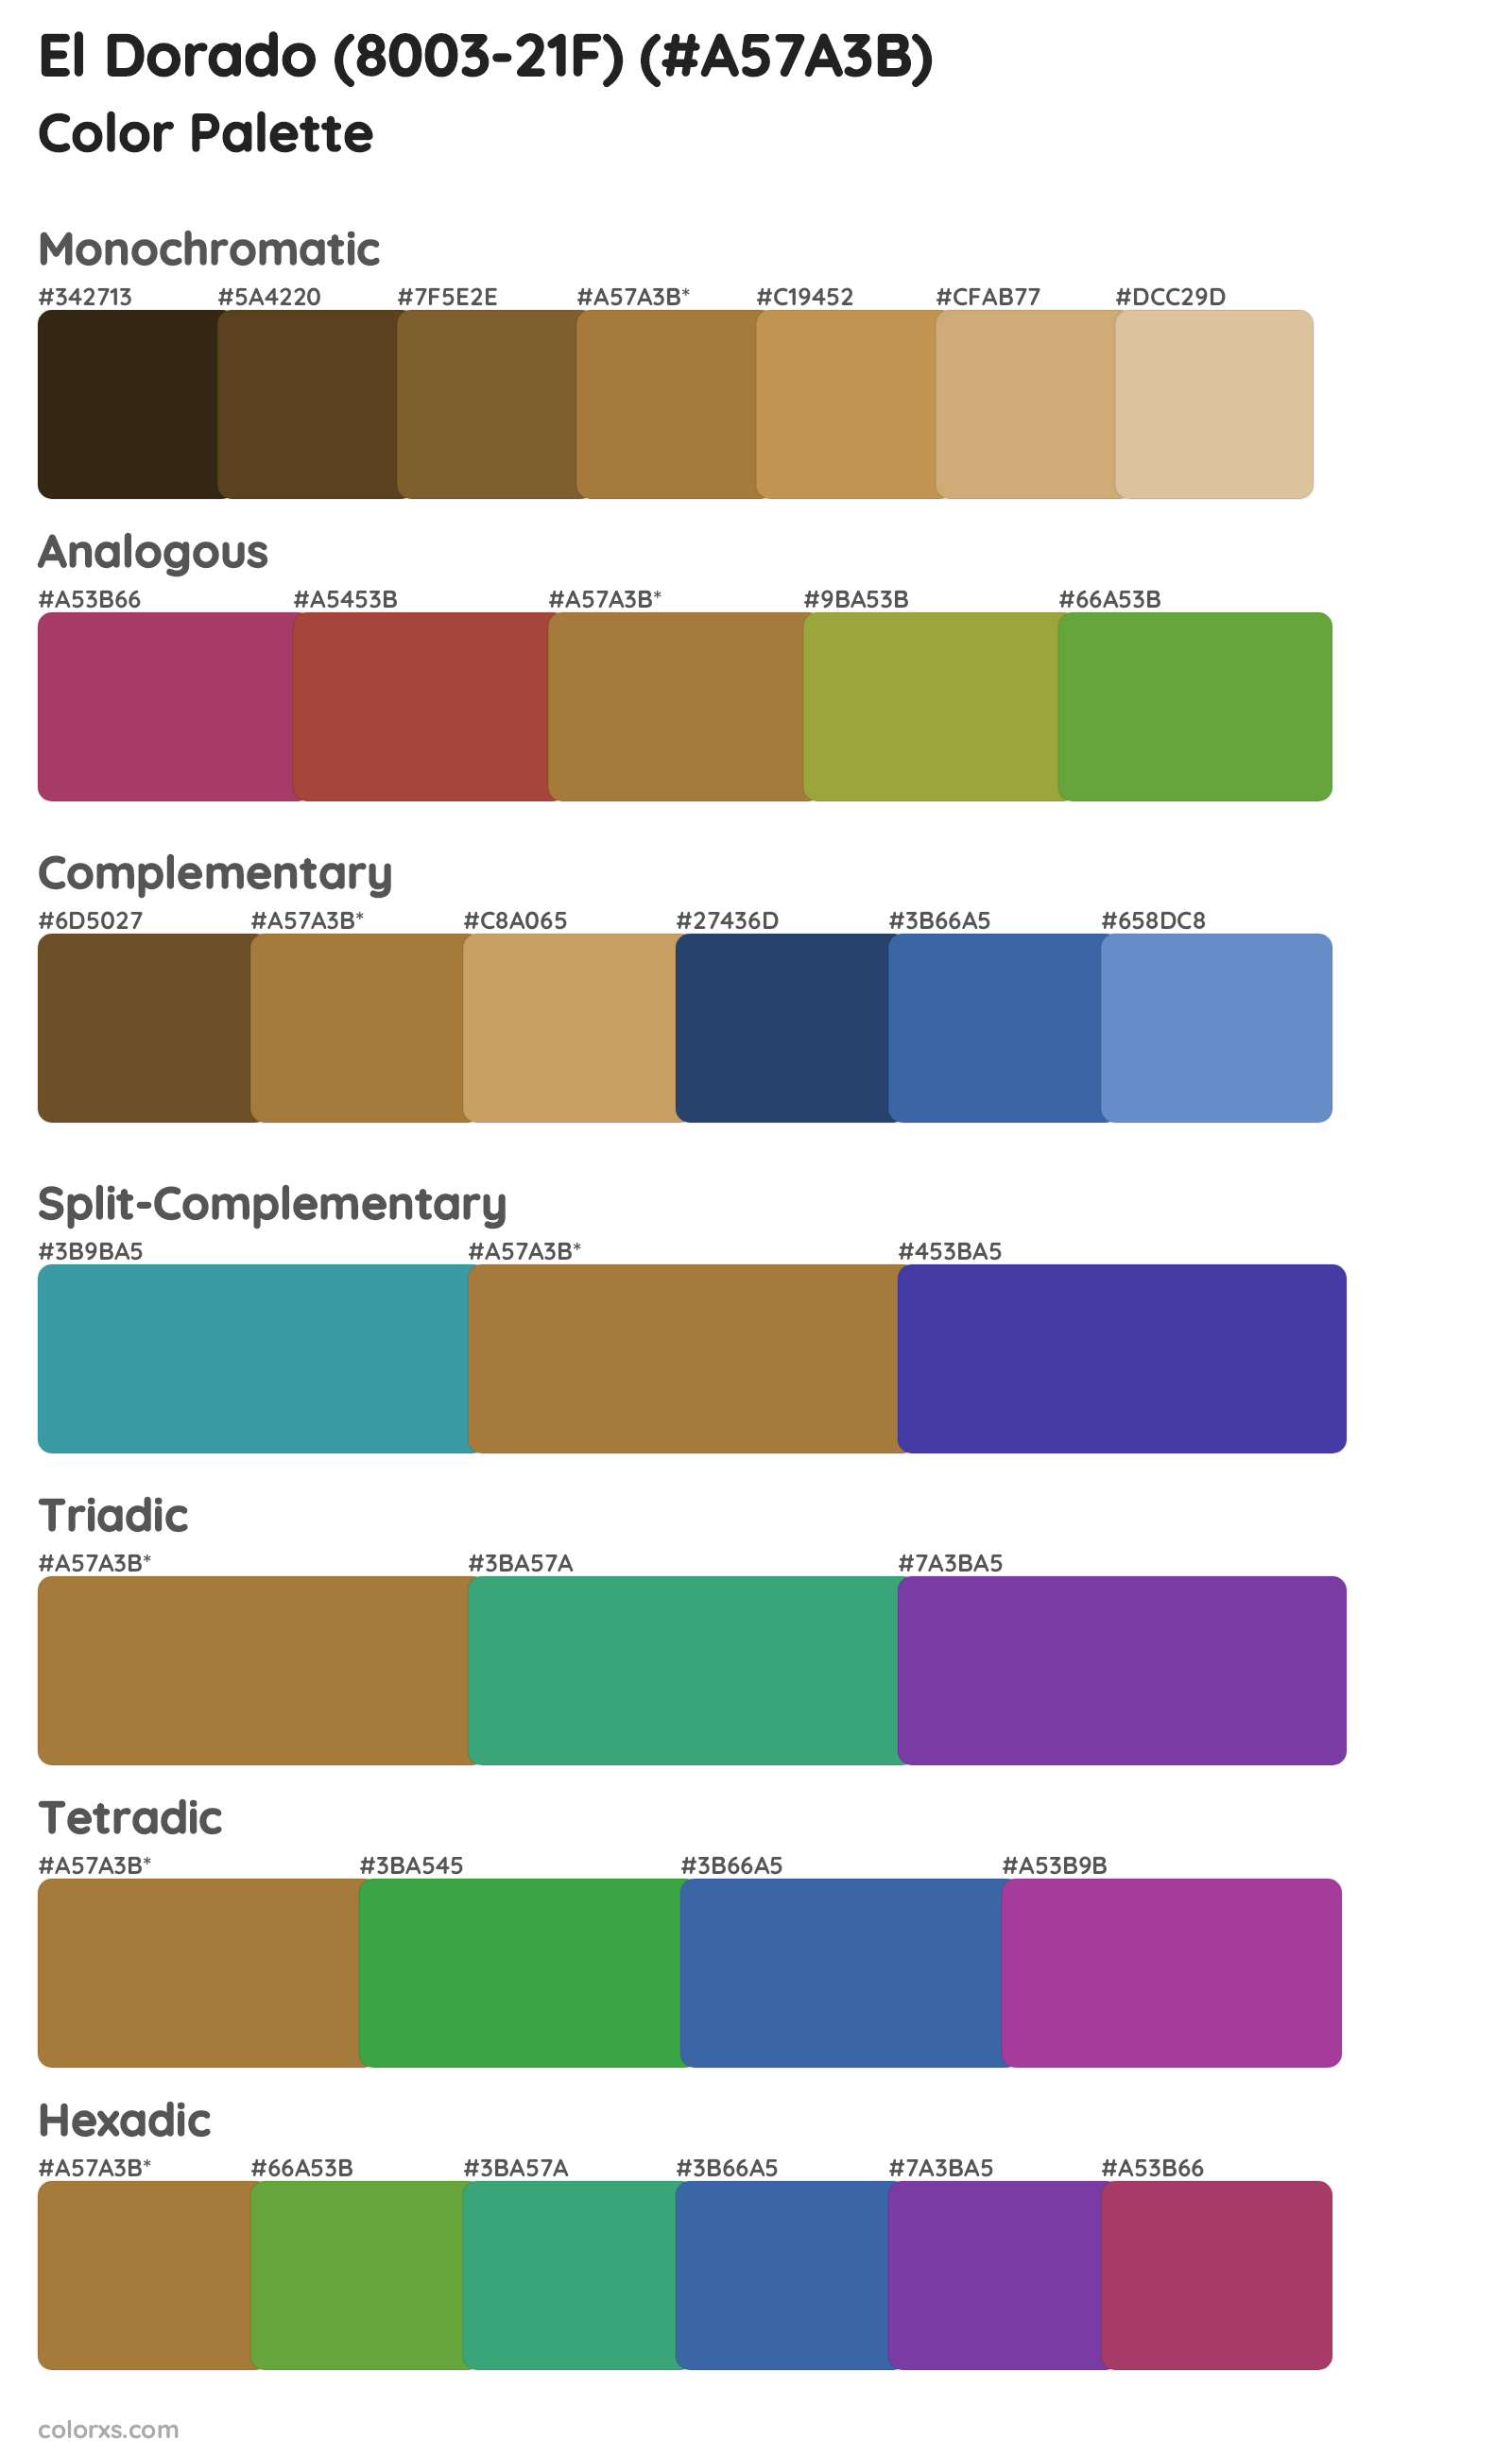 El Dorado (8003-21F) Color Scheme Palettes